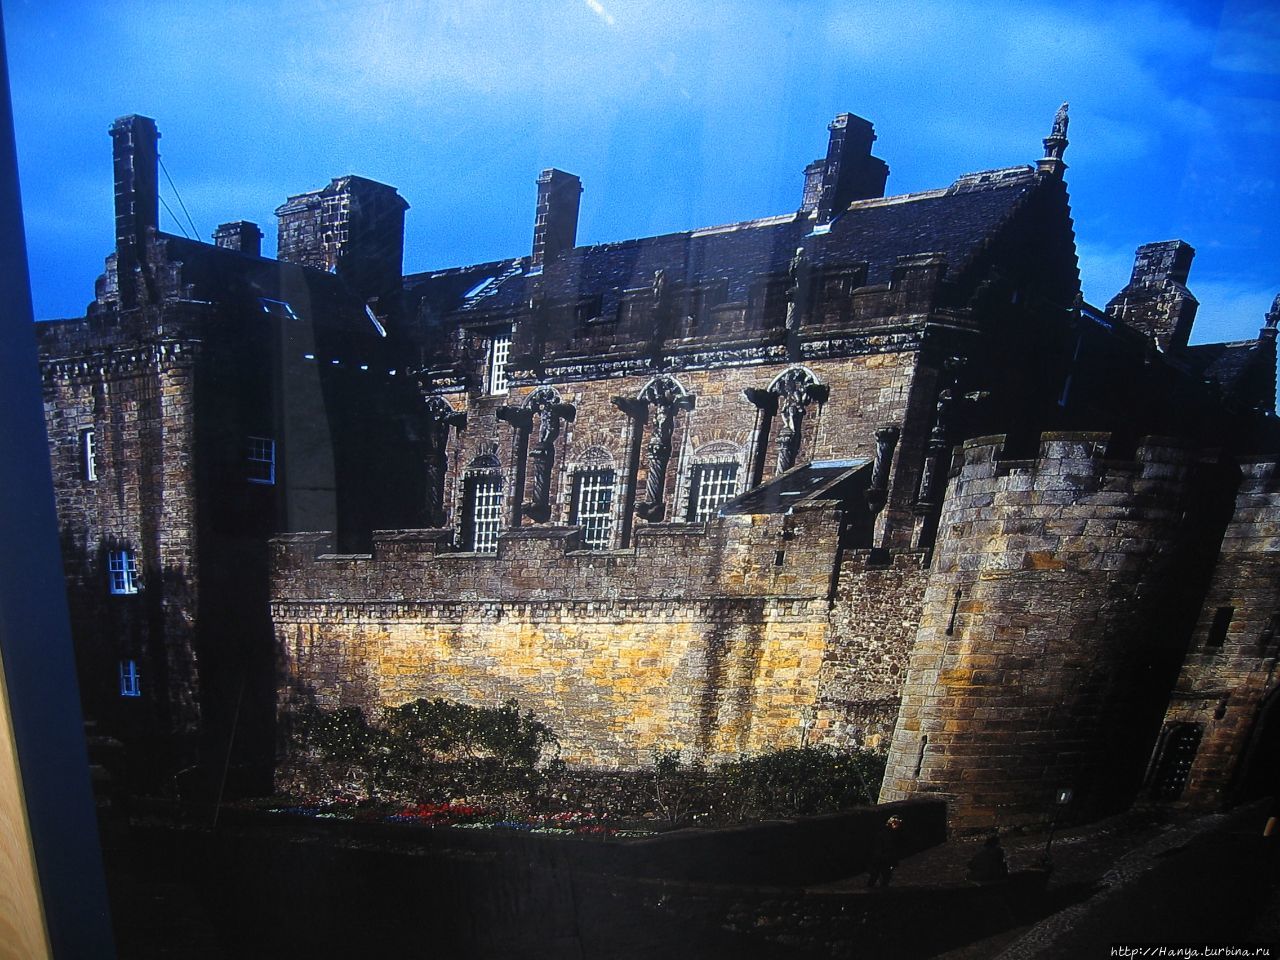 Фото Дворца с наружной стороны на стенде замка Стерлинг, Великобритания